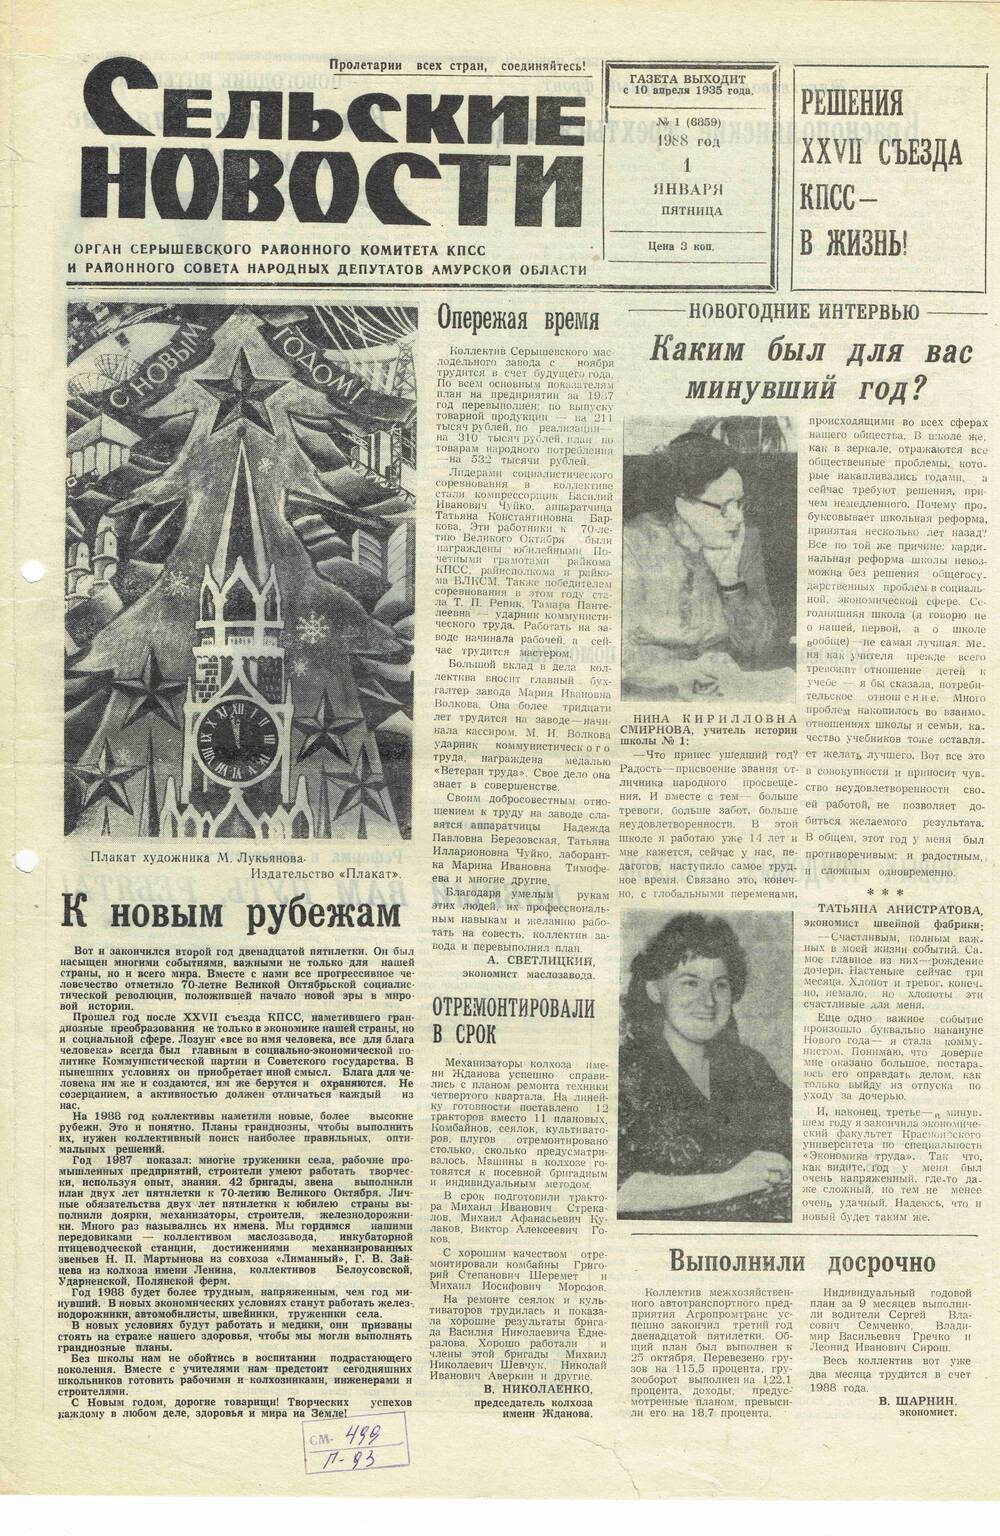 Газета «Сельские новости» №1 01.01.1988 года выпуска.